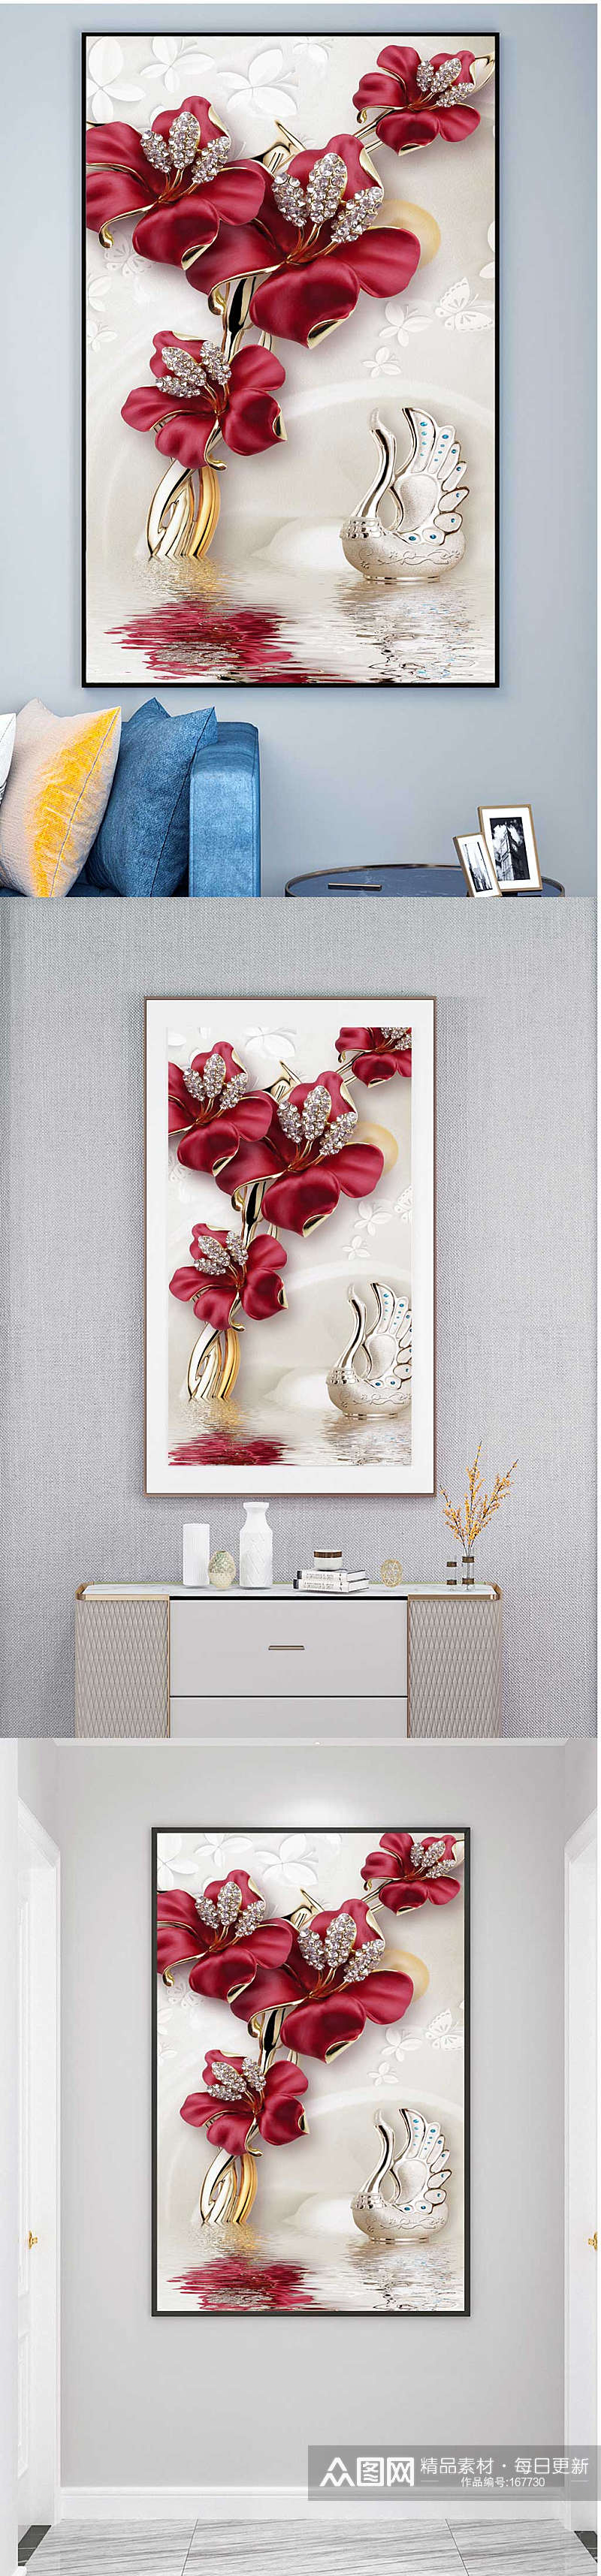 天鹅花朵抽象艺术装饰画素材